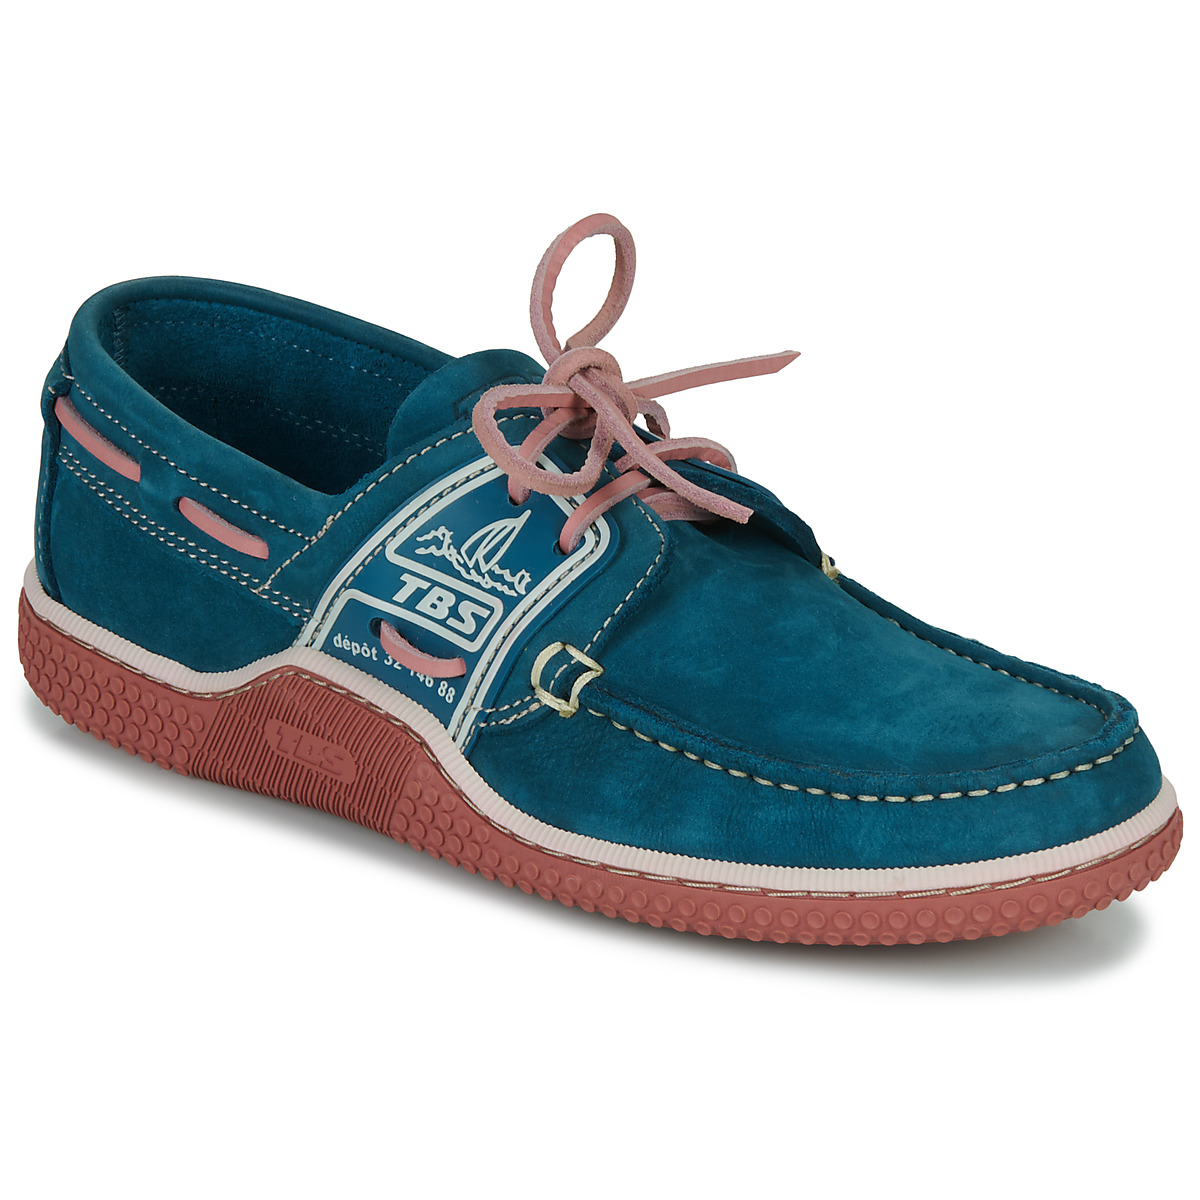 Zapatos Hombre Zapatos náuticos TBS GLOBEK Azul / Rojo